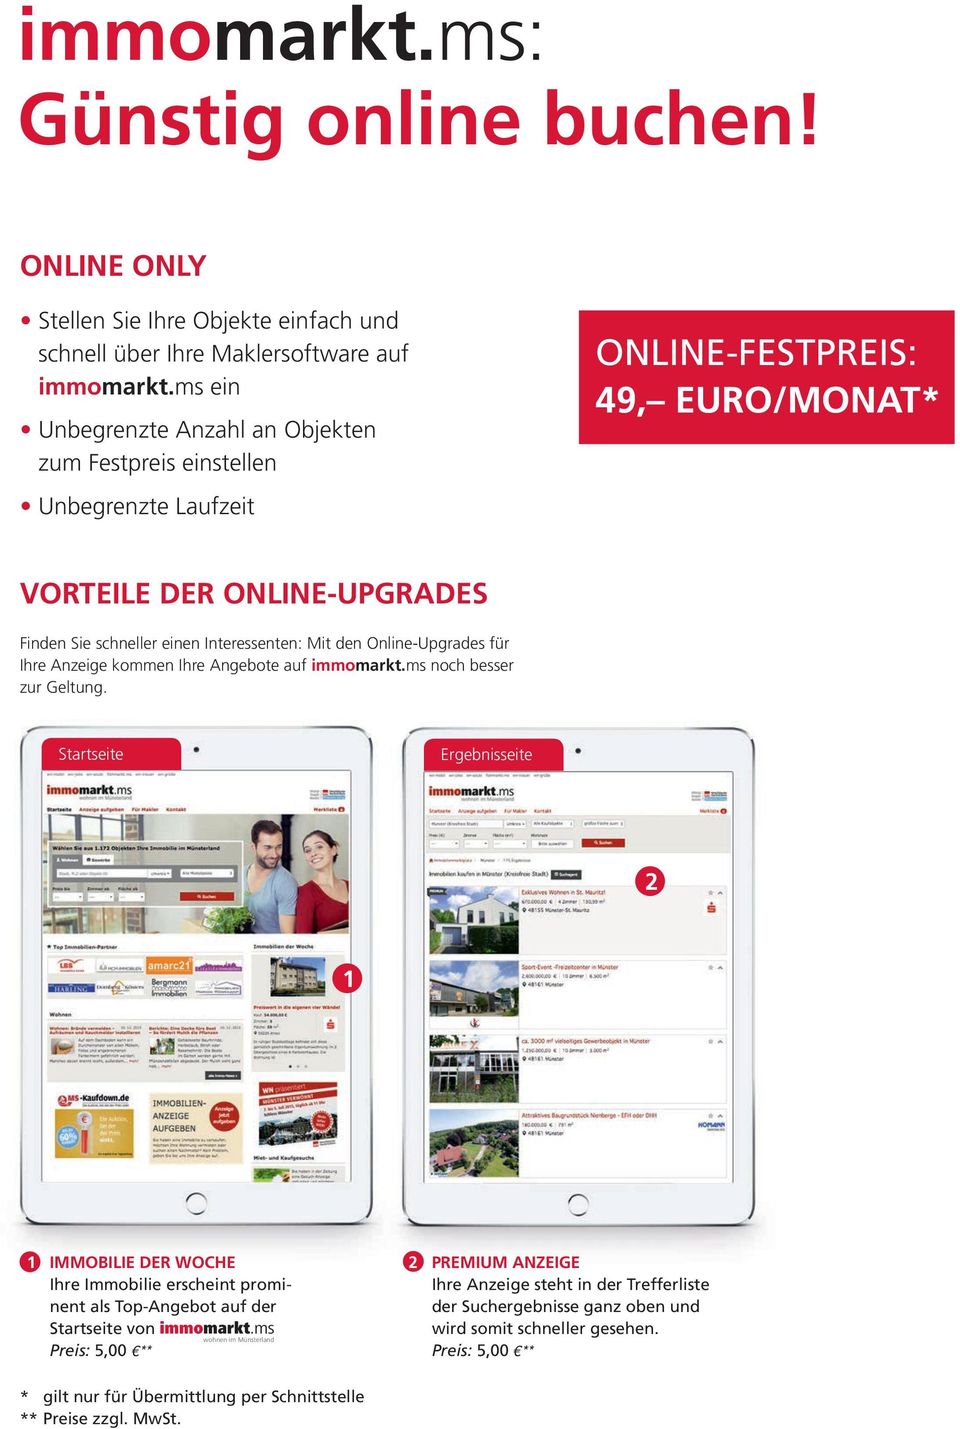 ONLINE-FESTPREIS: 49, EURO/MONAT* VORTEILE DER ONLINE-UPGRADES Finden Sie schneller einen Interessenten: Mit den Online-Upgrades für Ihre Anzeige kommen Ihre Angebote auf noch besser